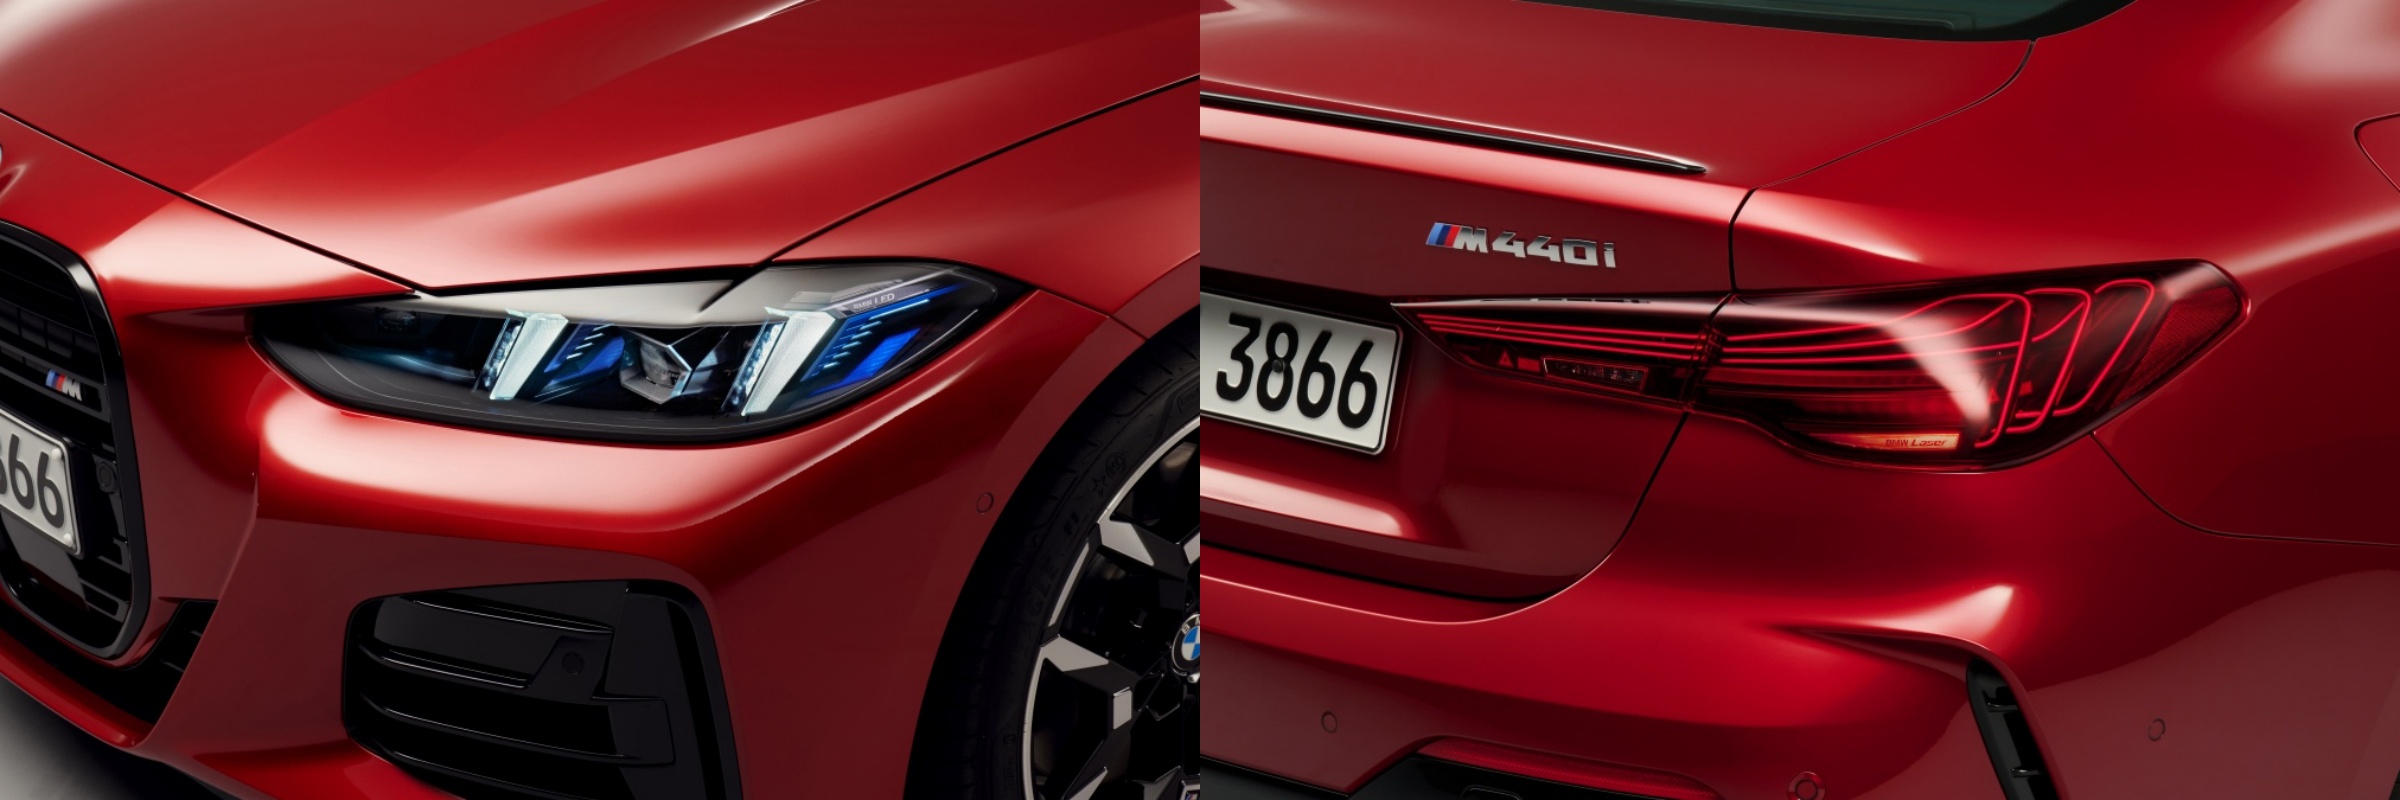 'BMW 4시리즈 쿠페'의 정면과 후면 라이트를 촬영한 사진이다.